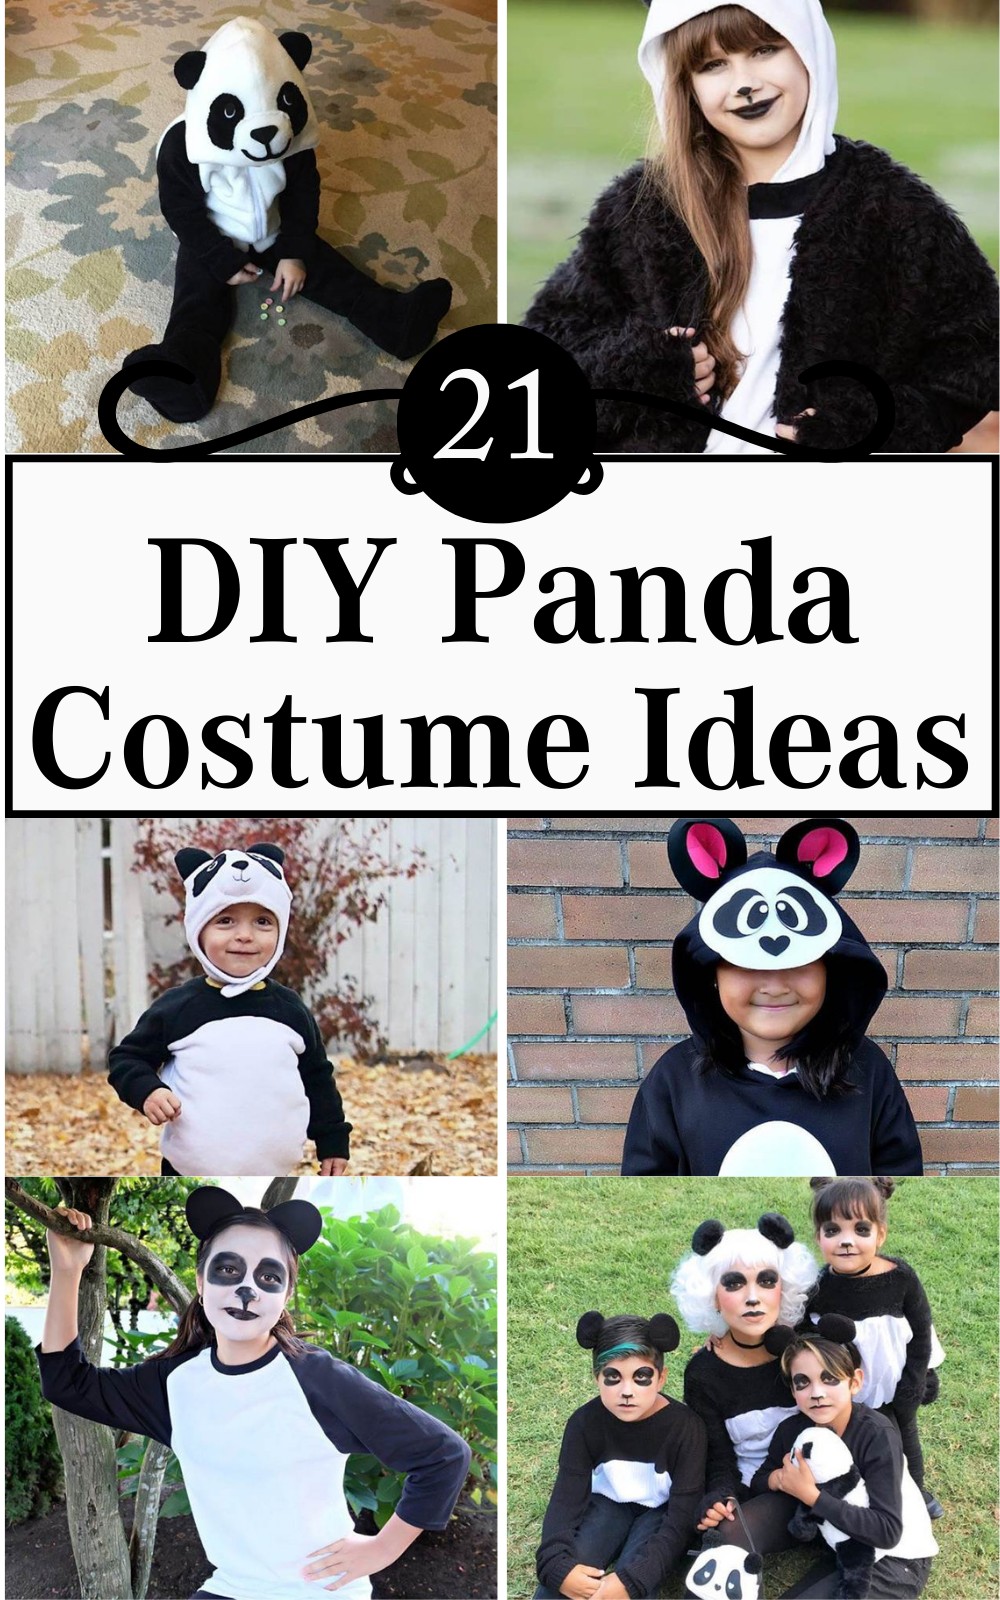 21 DIY Panda Costume Ideas